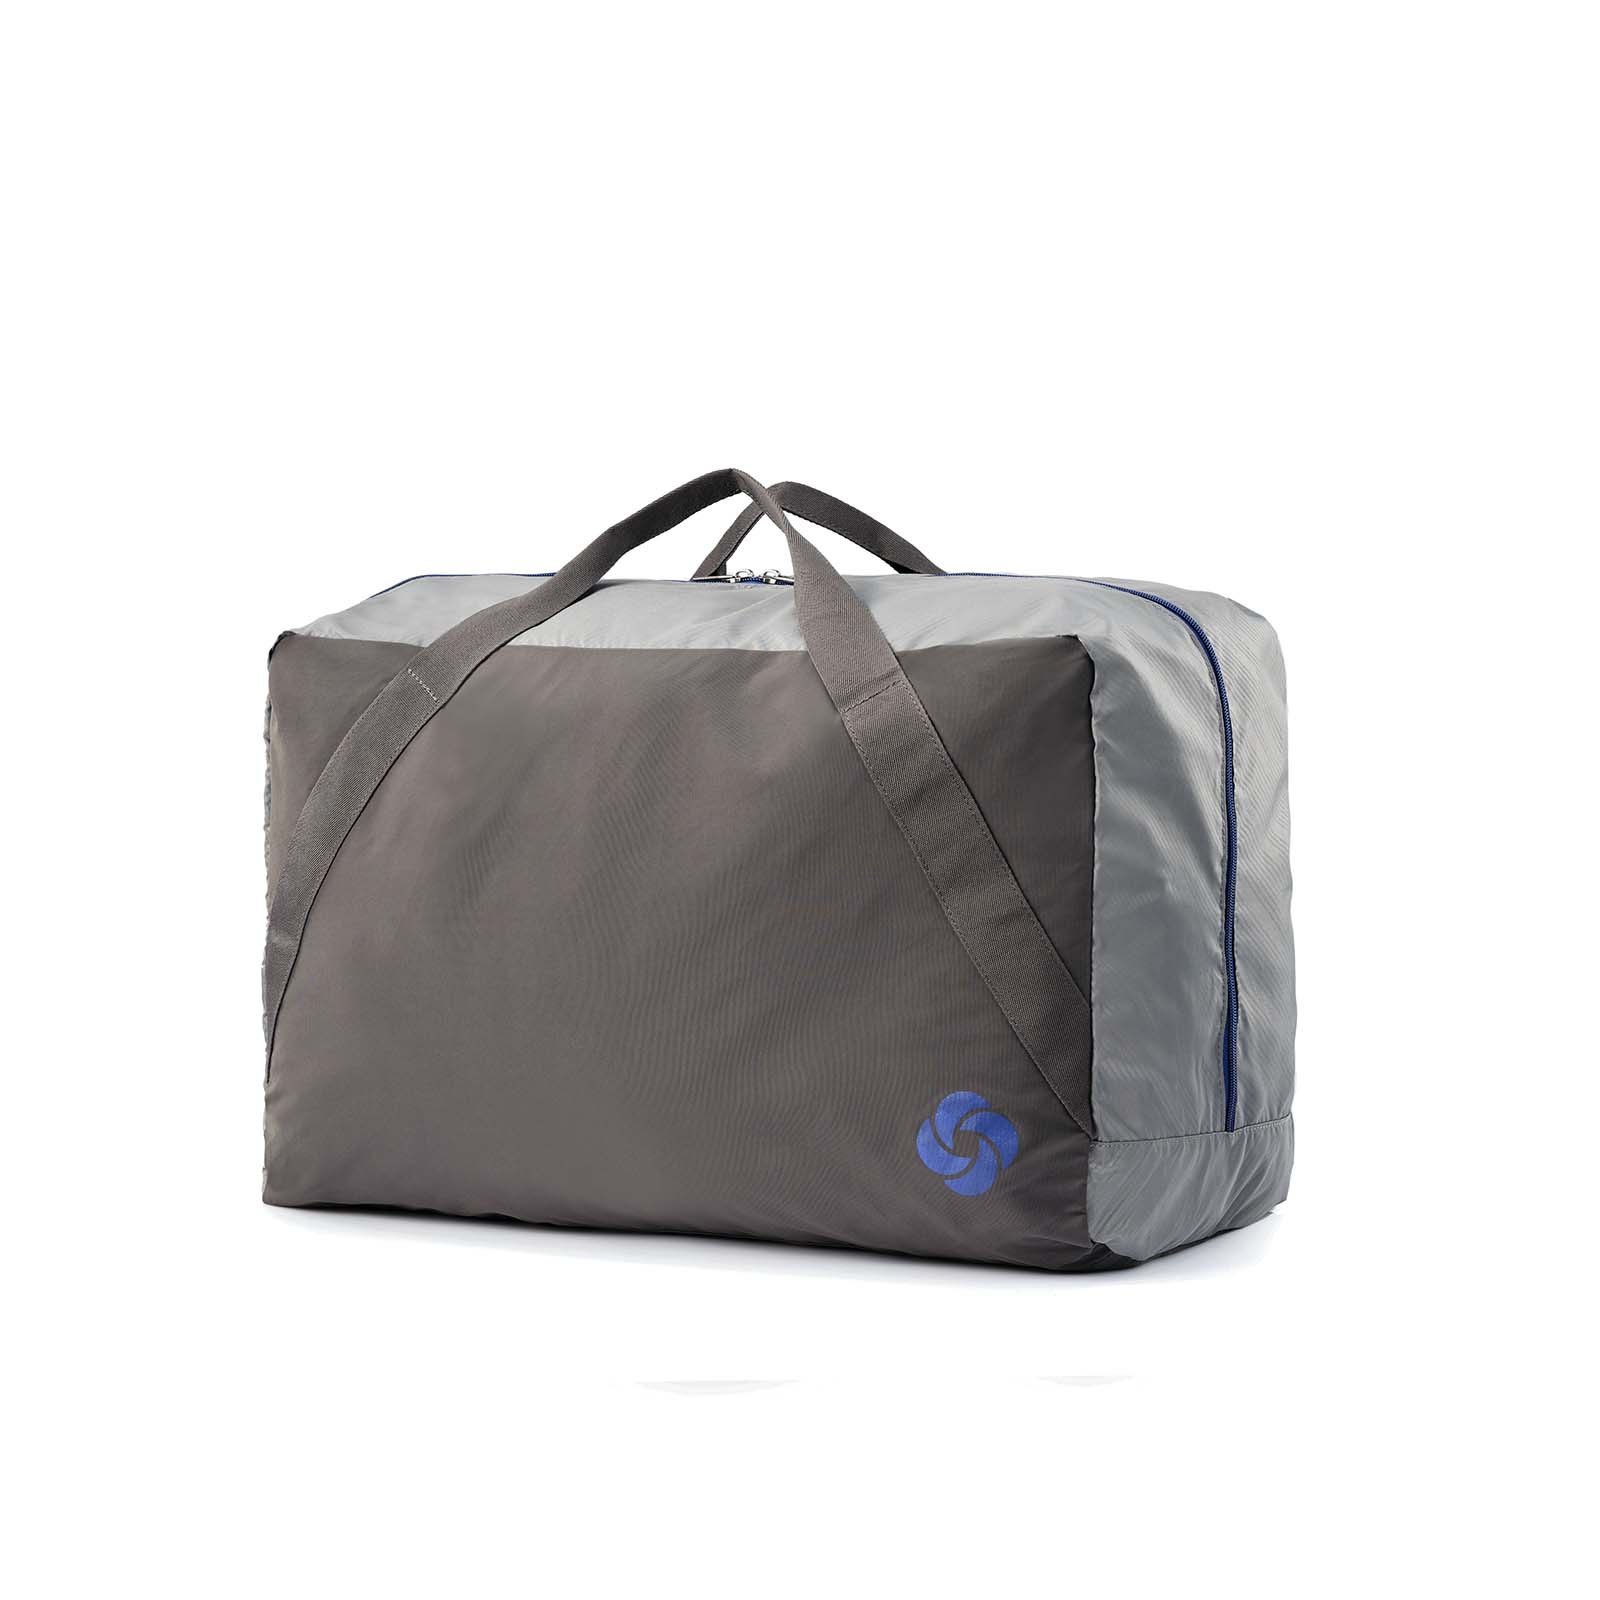 Samsonite-73h-55cm-Suitcase-Platinum-Grey-Carry-Bag